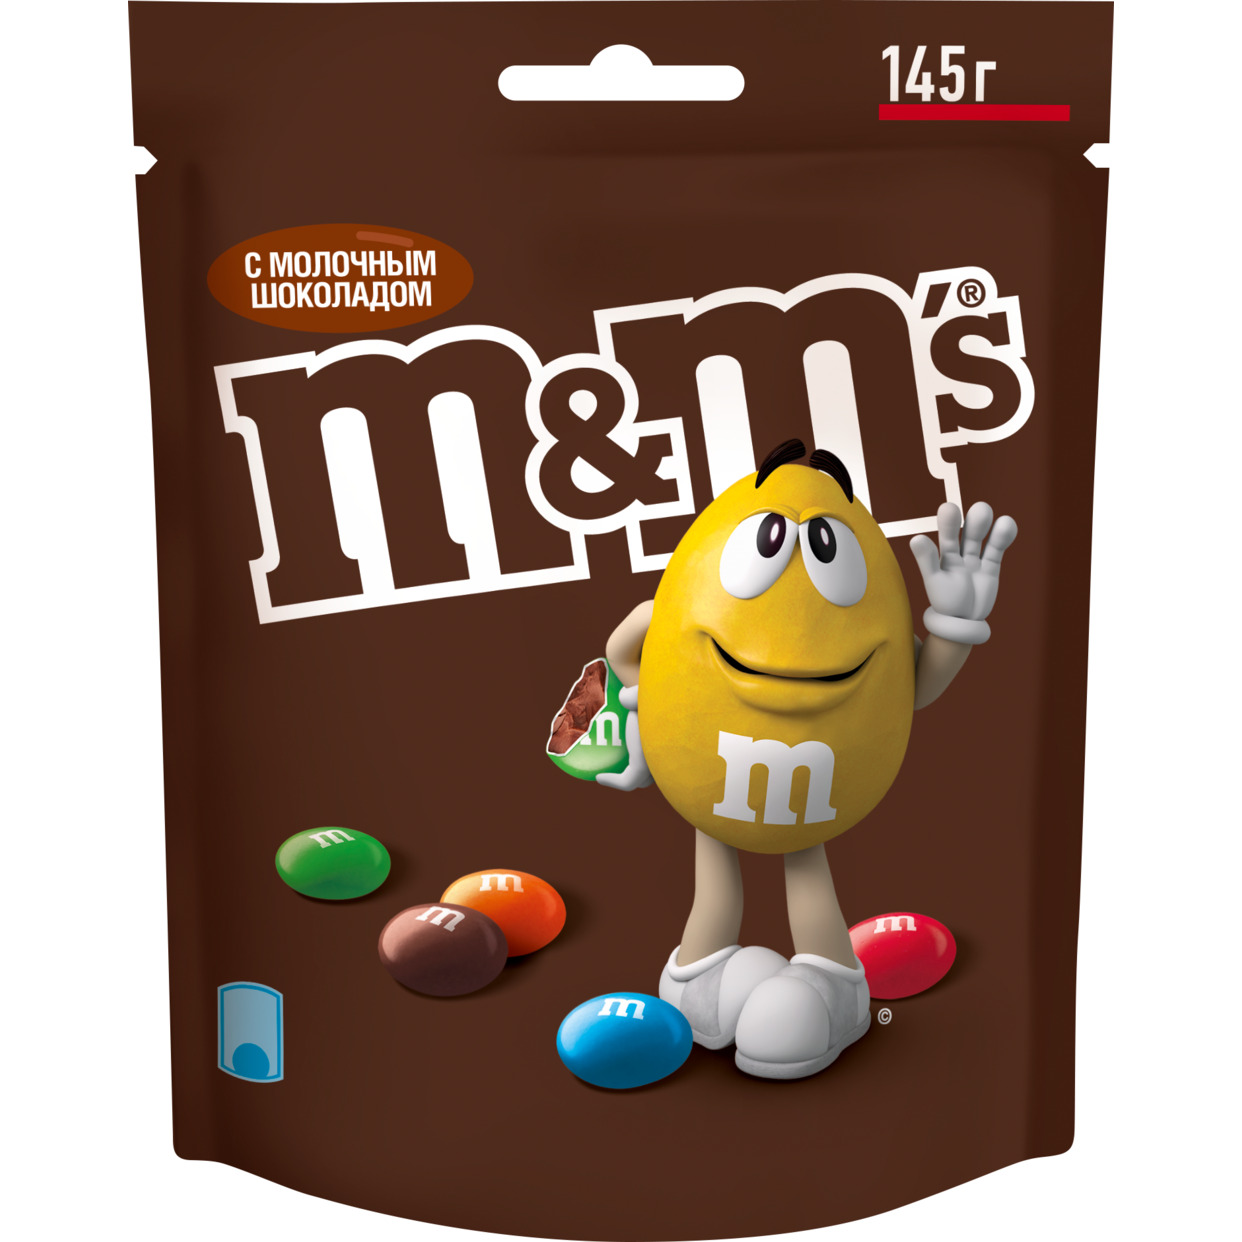 Драже M&Ms с молочным шоколадом, покрытое хрустящей разноцветной глазурью, 145г. по акции в Пятерочке